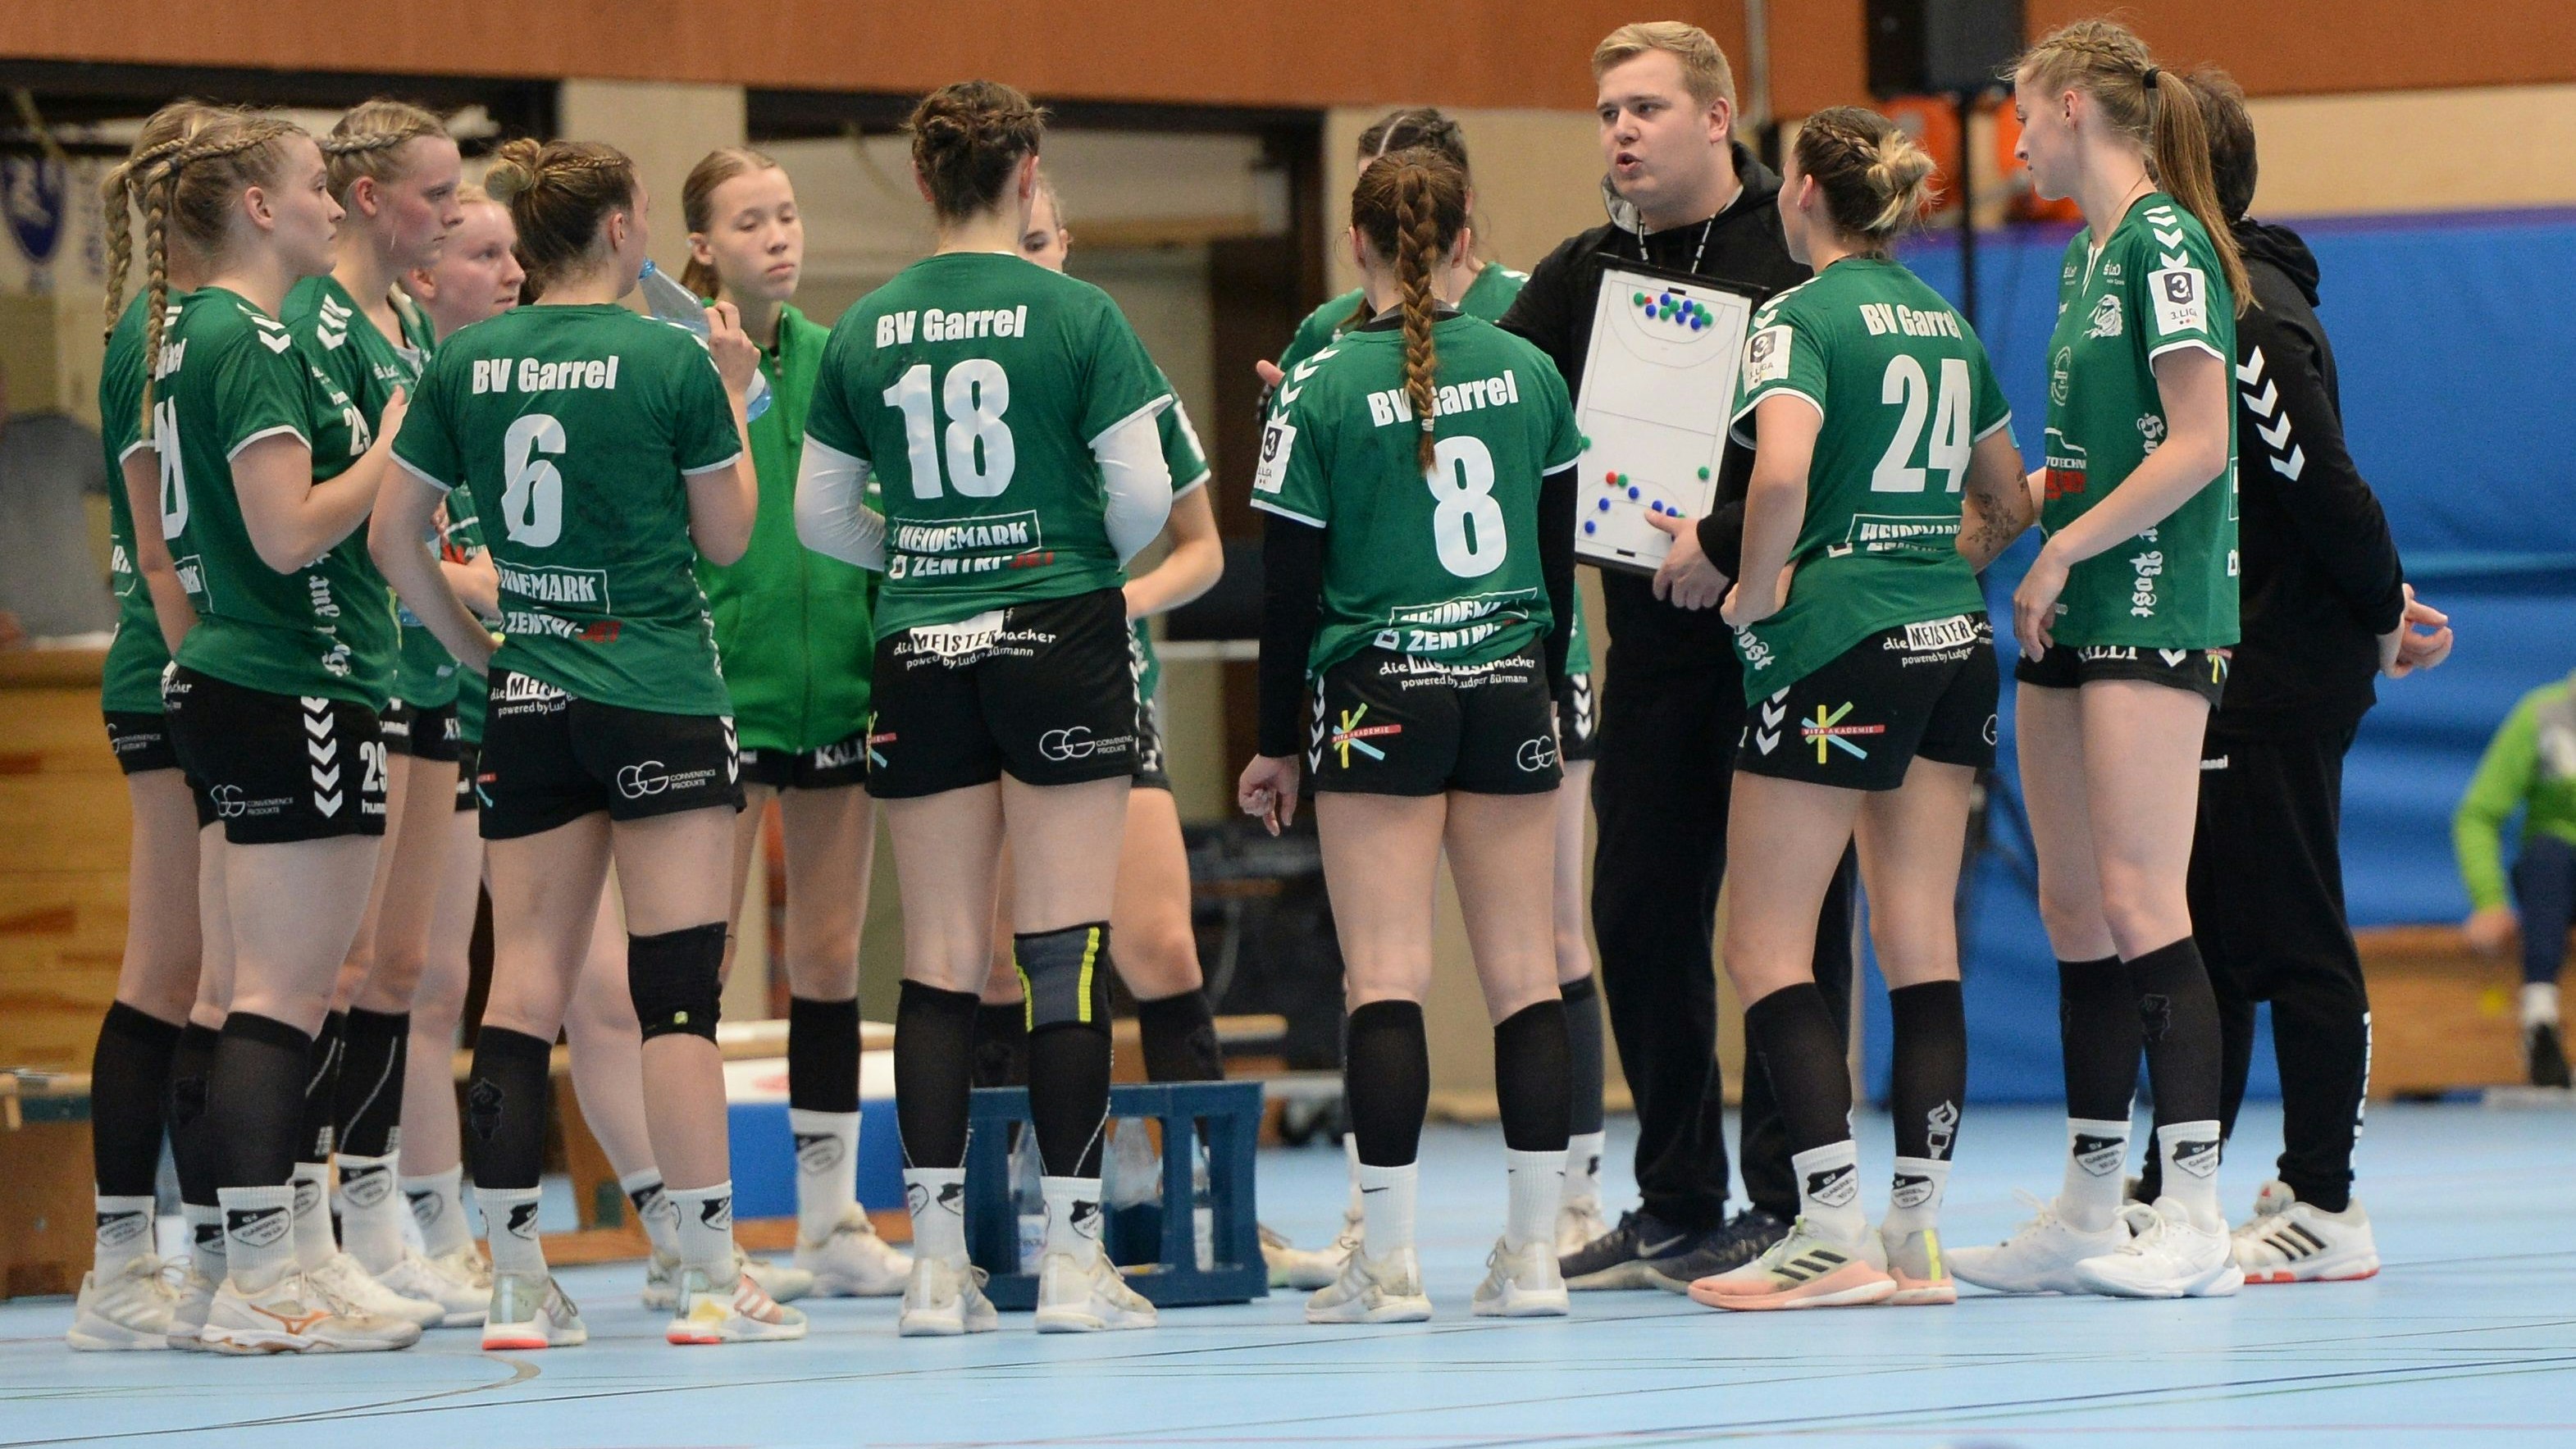 Entscheidungen gefällt: Die Handballerinnen des BV Garrel verzichten auf die Aufstiegsrunde und den Ligapokal. Außerdem wird Jonas Kettmann (Dritter von rechts) auch in der kommenden Saison die Mannschaft trainieren. Foto: Langosch